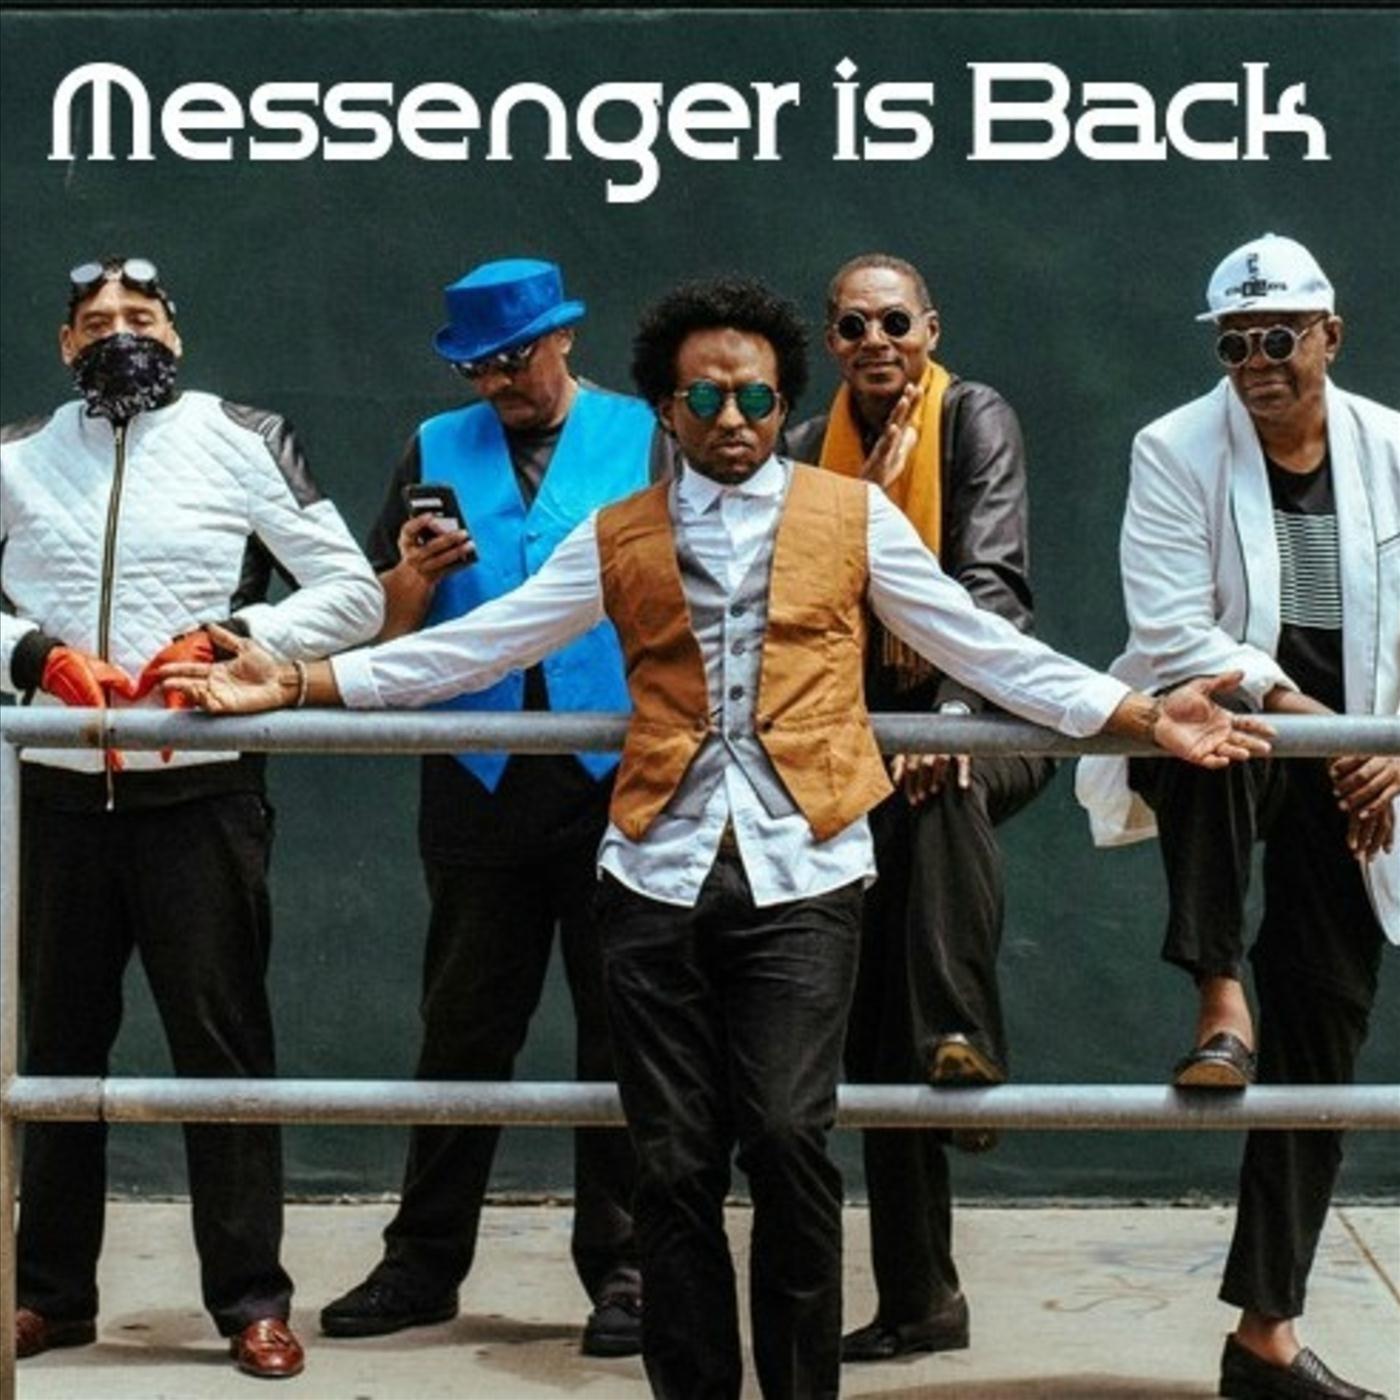 Messenger Is Back